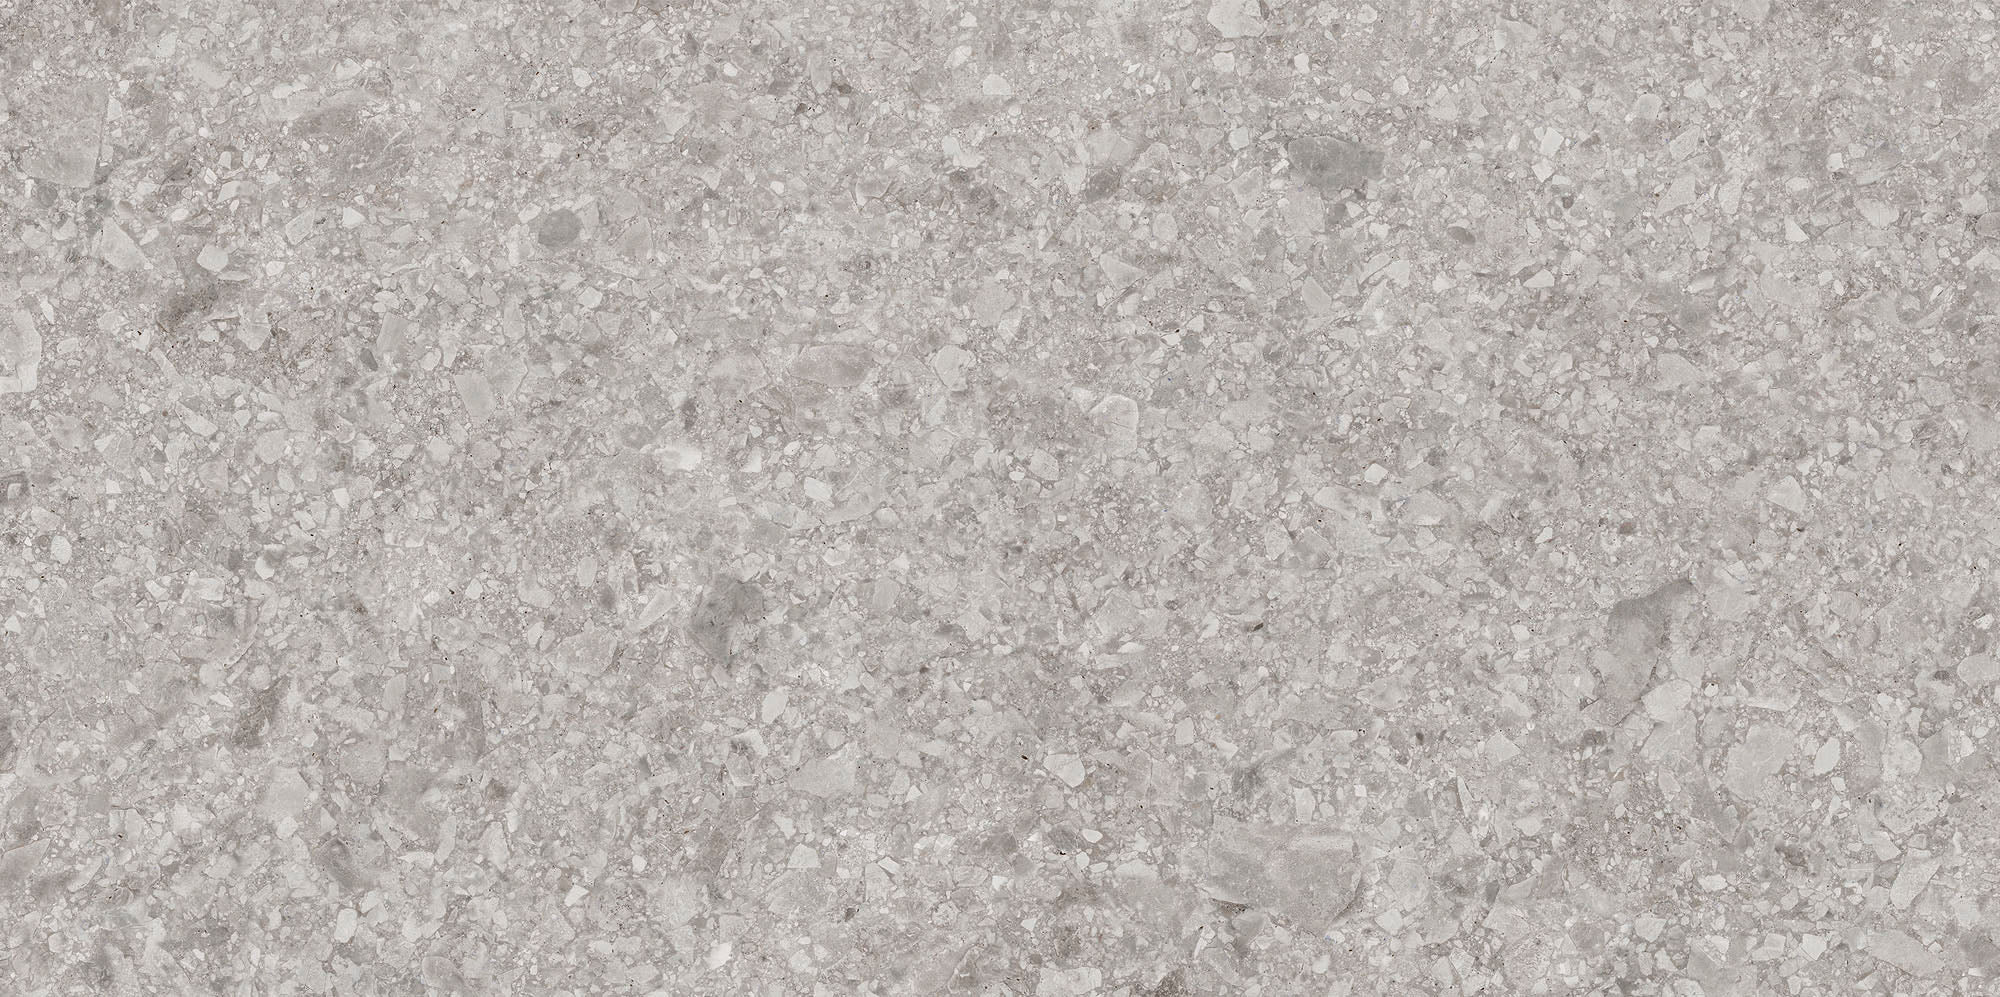 Balance Ceppo Di Gre Grey Matte Tiles 300x600mm